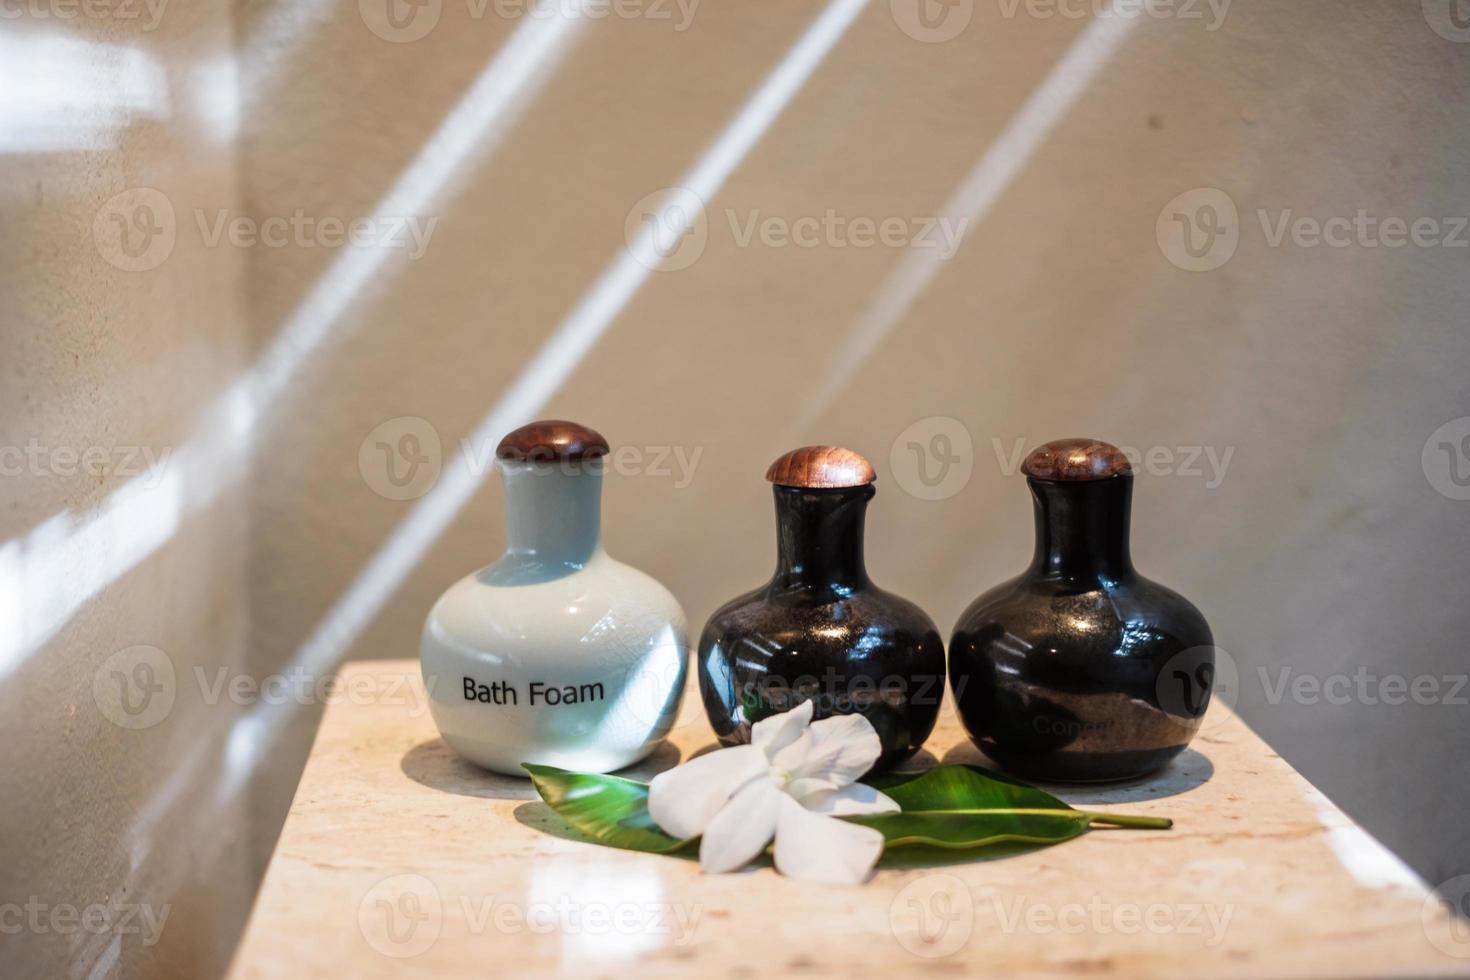 garrafas de produtos de higiene pessoal no banheiro do hotel de luxo ou casa moderna. conjunto de recipientes de banho, gel de banho corporal, xampu e condicionador de cabelo em cerâmica foto